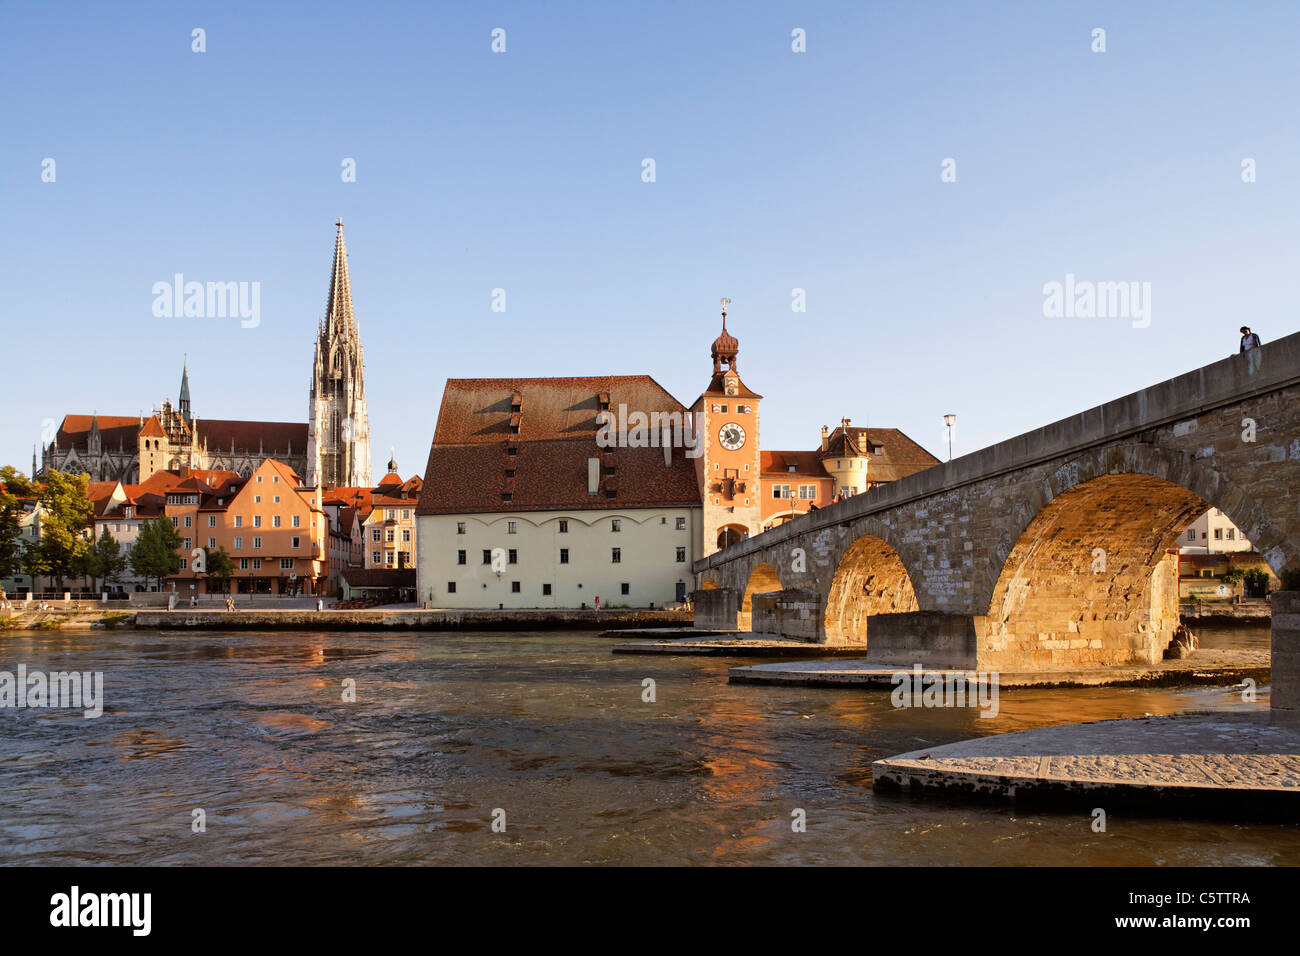 Alemania, Baviera, el Alto Palatinado, Regensburg, vista de la ciudad vieja con la catedral, el puente de piedra y el río Danubio Foto de stock